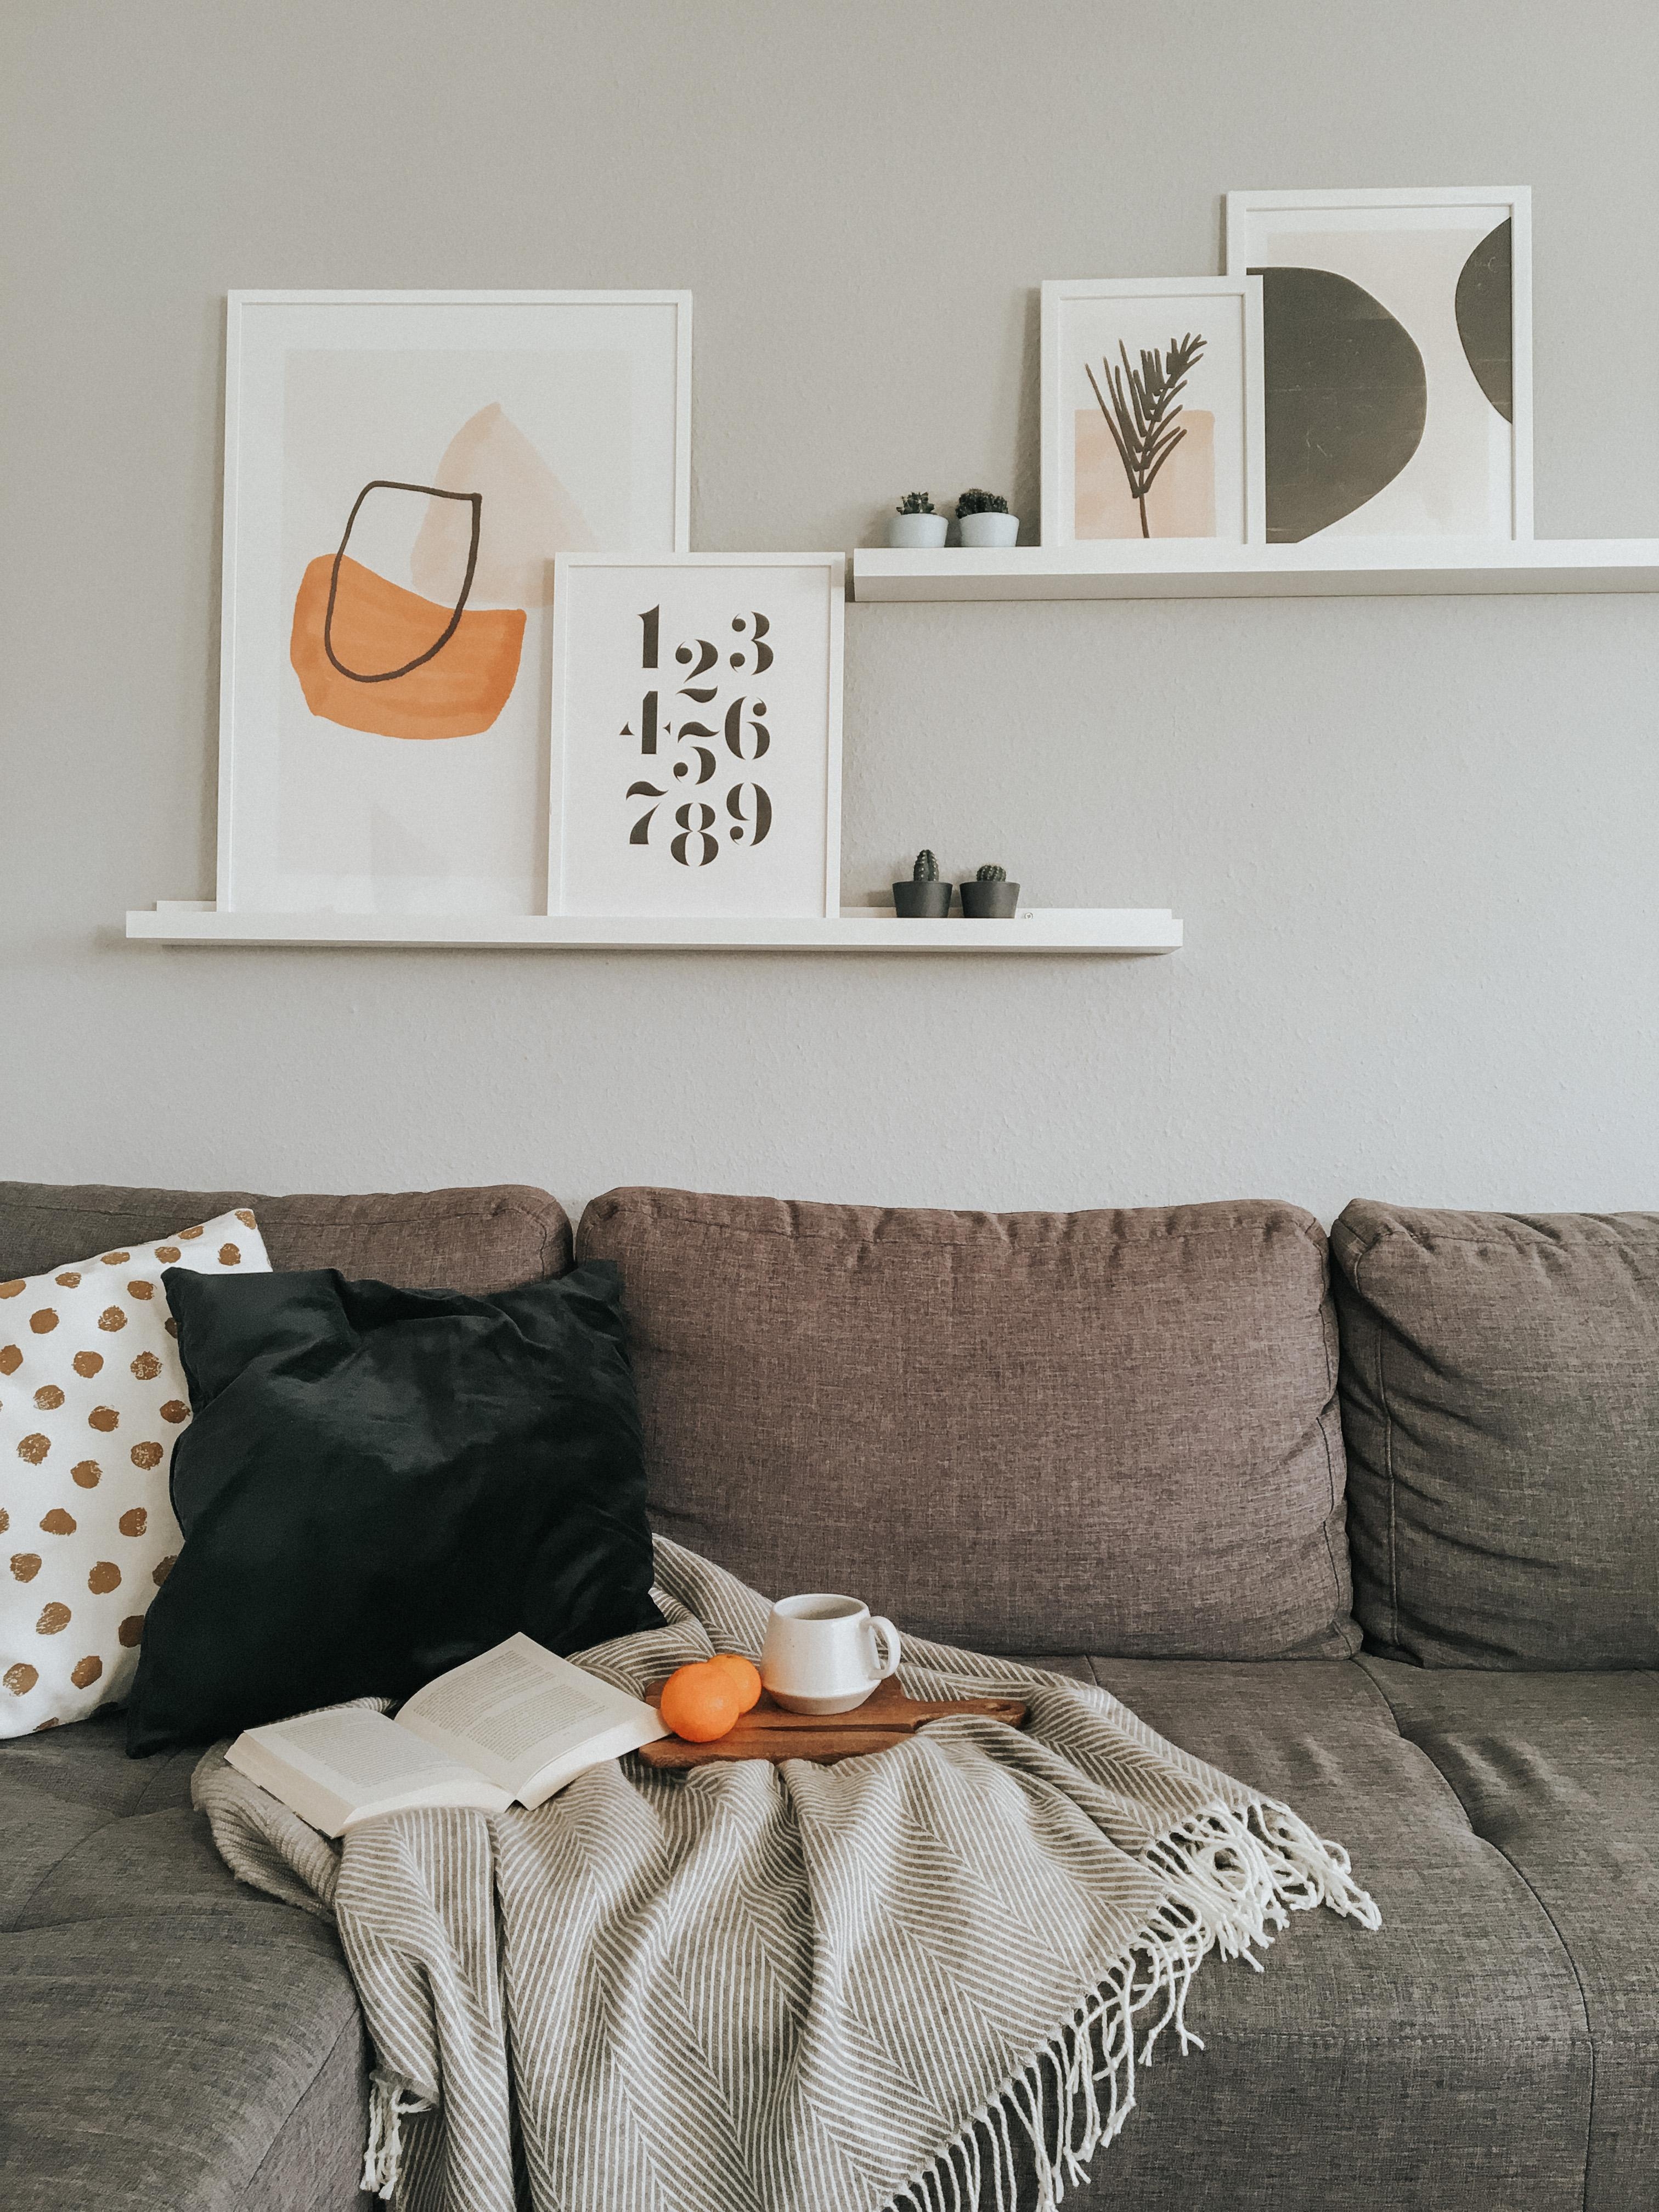 Livingroom 🧡
#home #interior #inspo #cozy